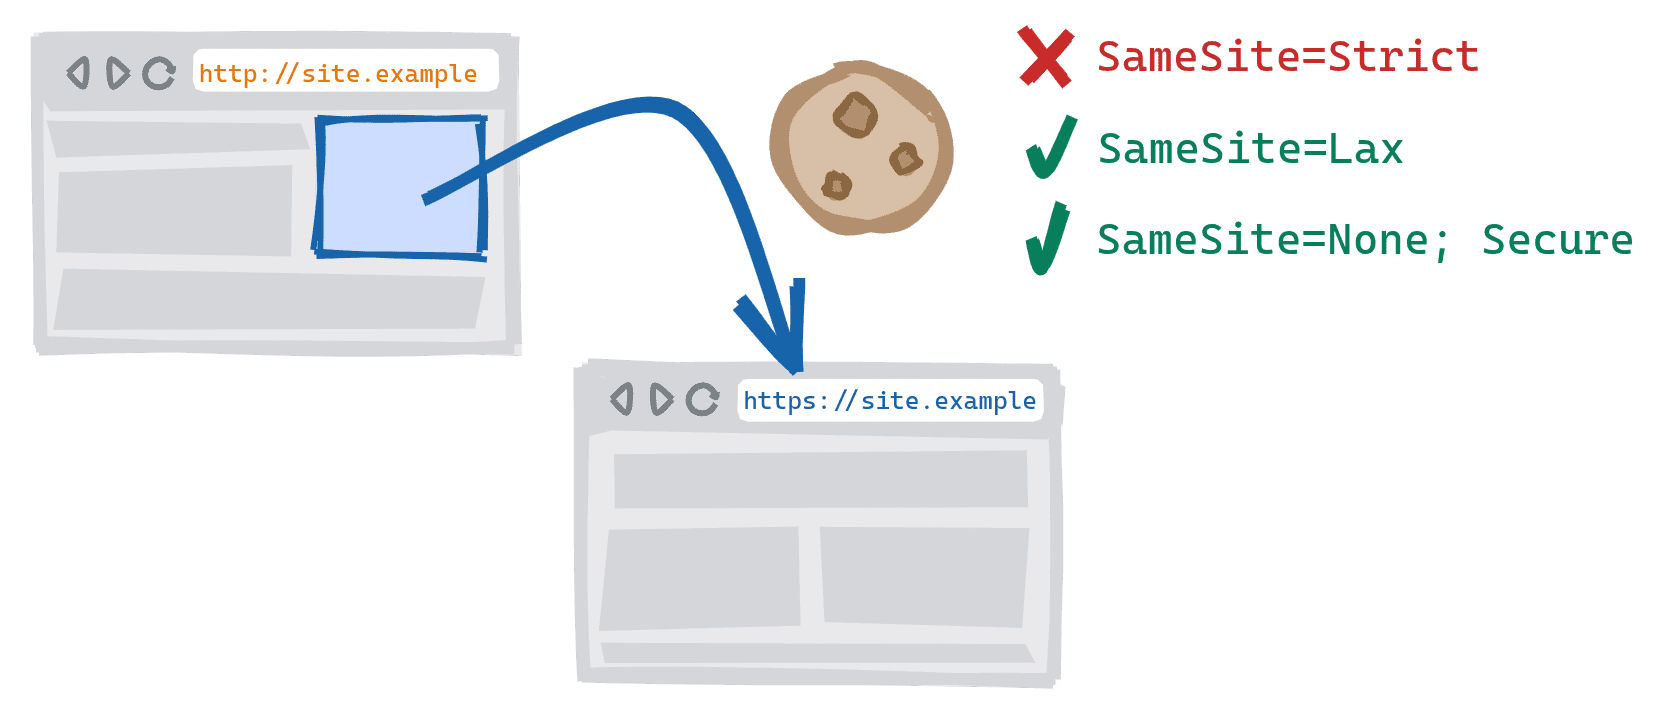 Nawigacja w ramach schematu aktywowana przez kliknięcie linku w niezabezpieczonej wersji HTTP witryny prowadzącej do bezpiecznej wersji HTTPS. SameSite=Strict pliki cookie zablokowane, SameSite=Lax i SameSite=None; dozwolone są bezpieczne pliki cookie.